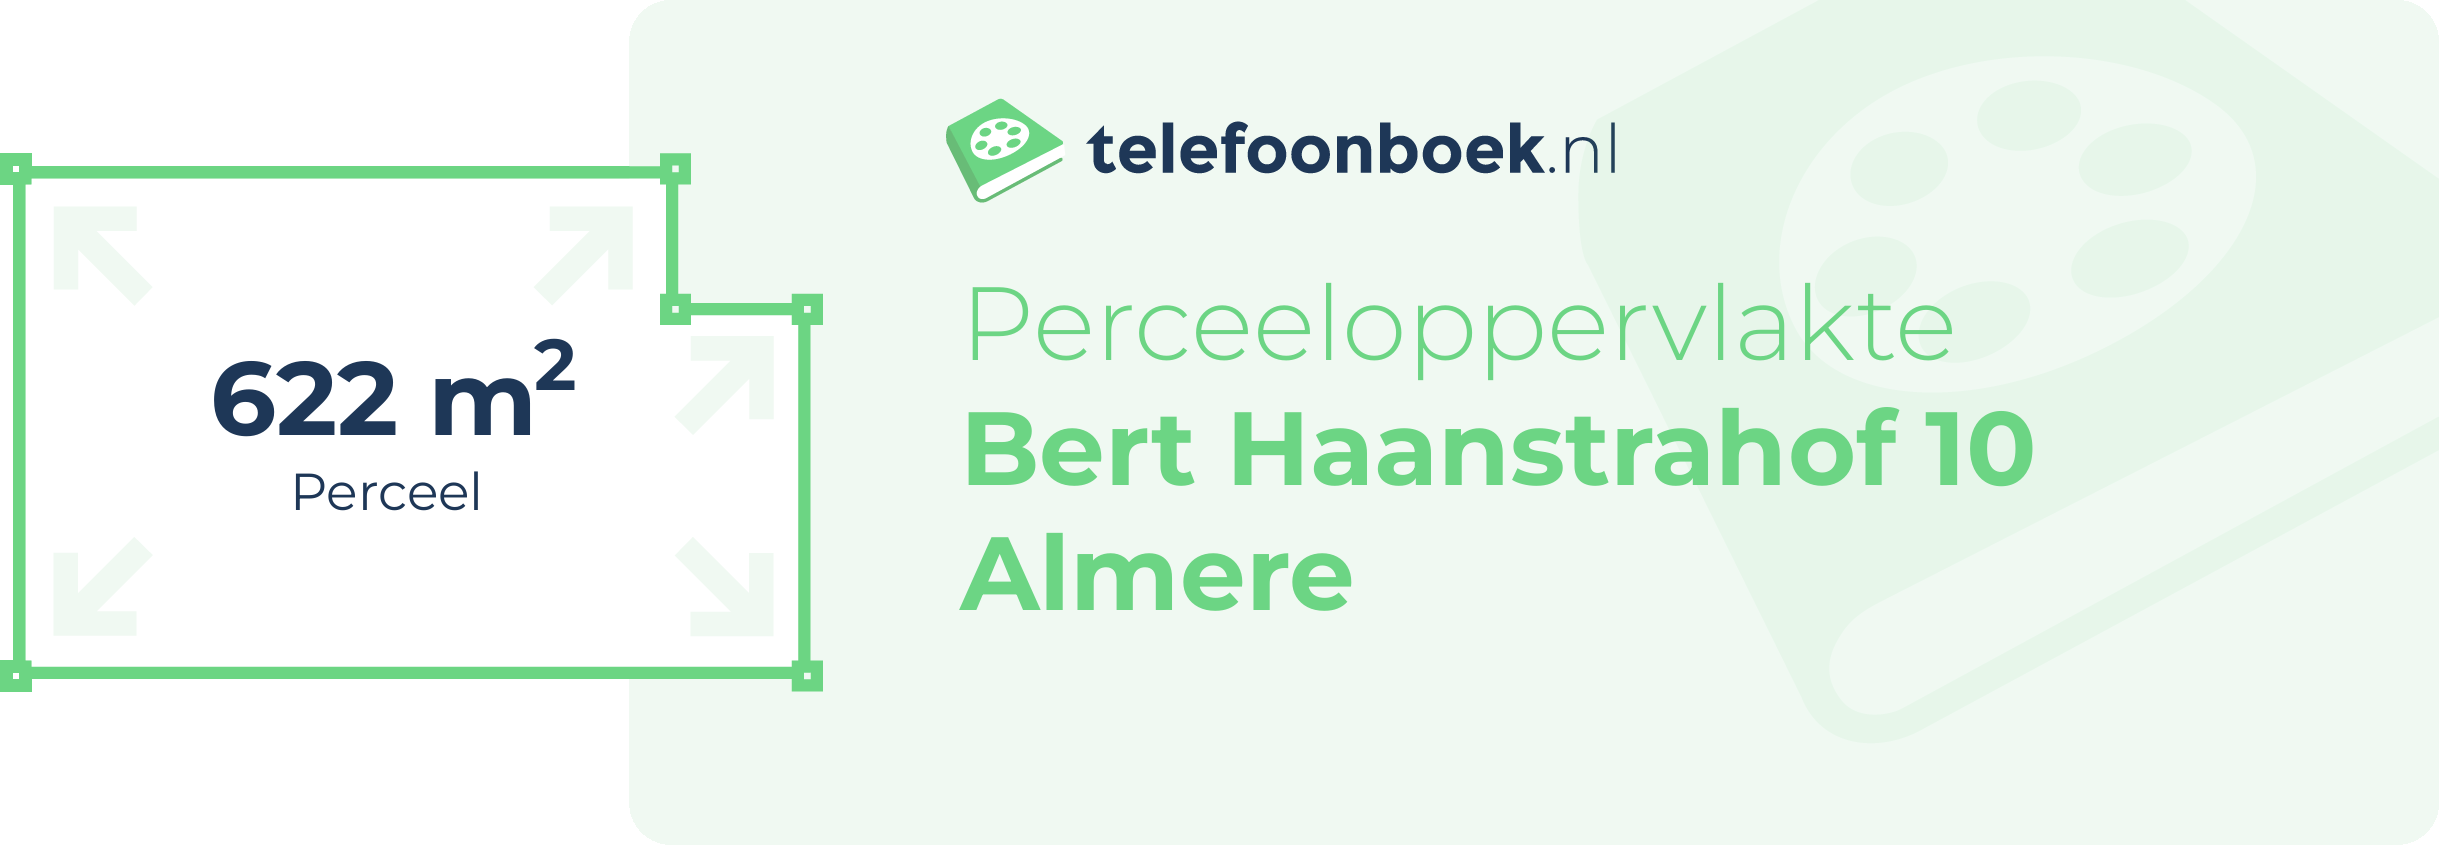 Perceeloppervlakte Bert Haanstrahof 10 Almere